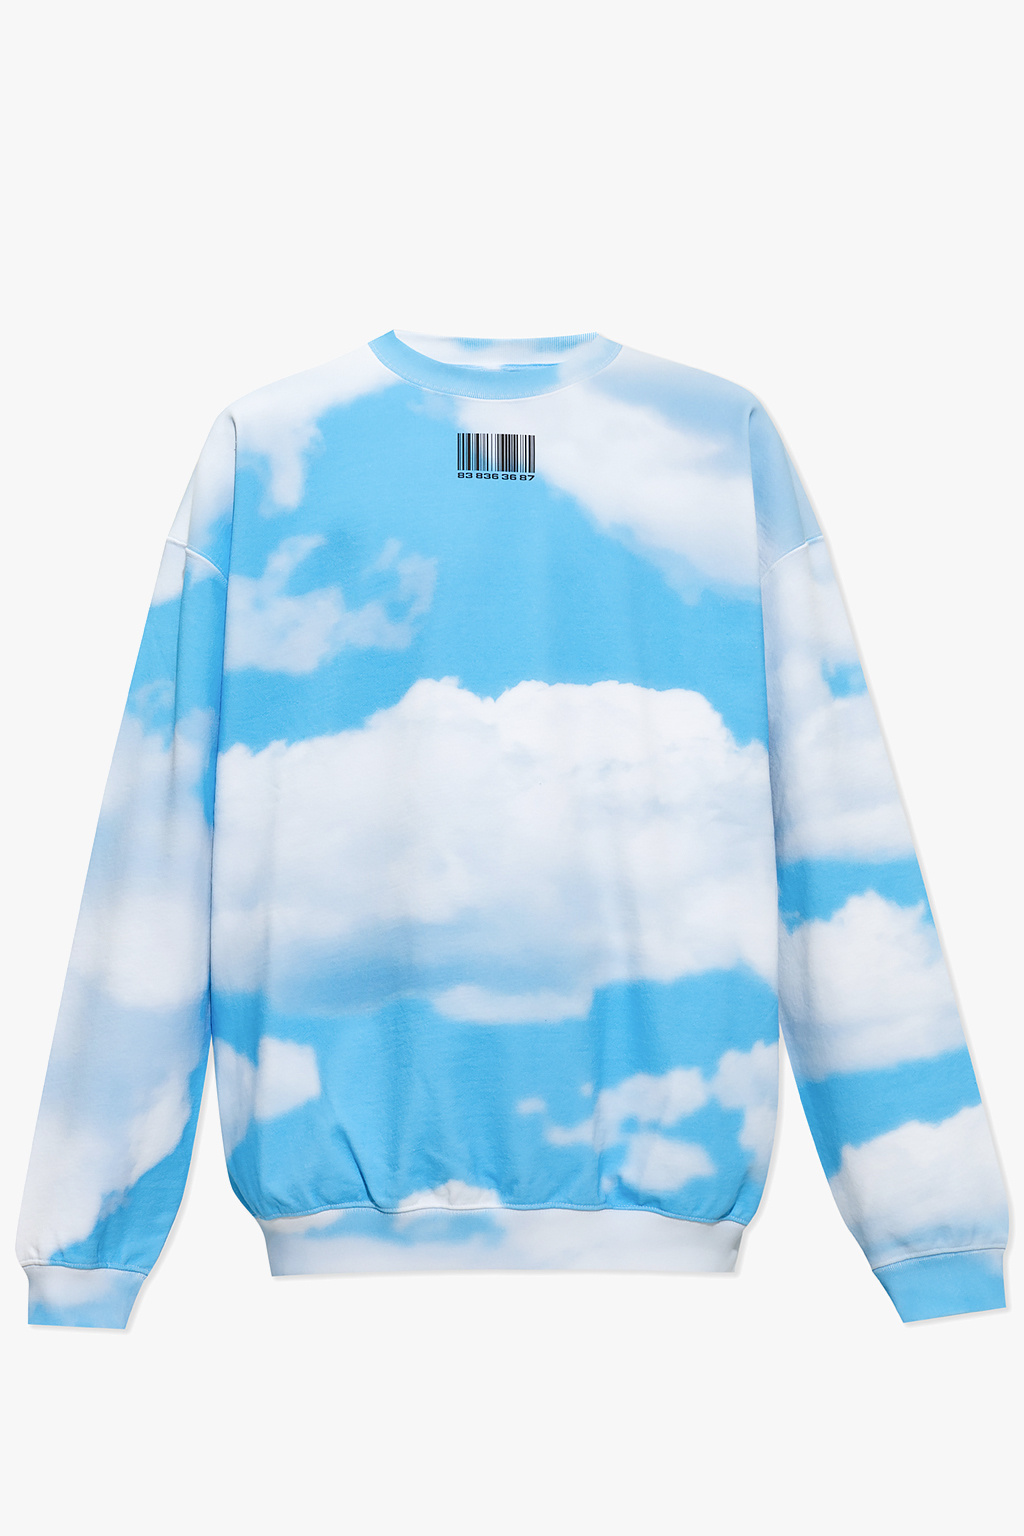 Louis Vuitton Monogram Cloud T-Shirt Sky Blue. Size 36